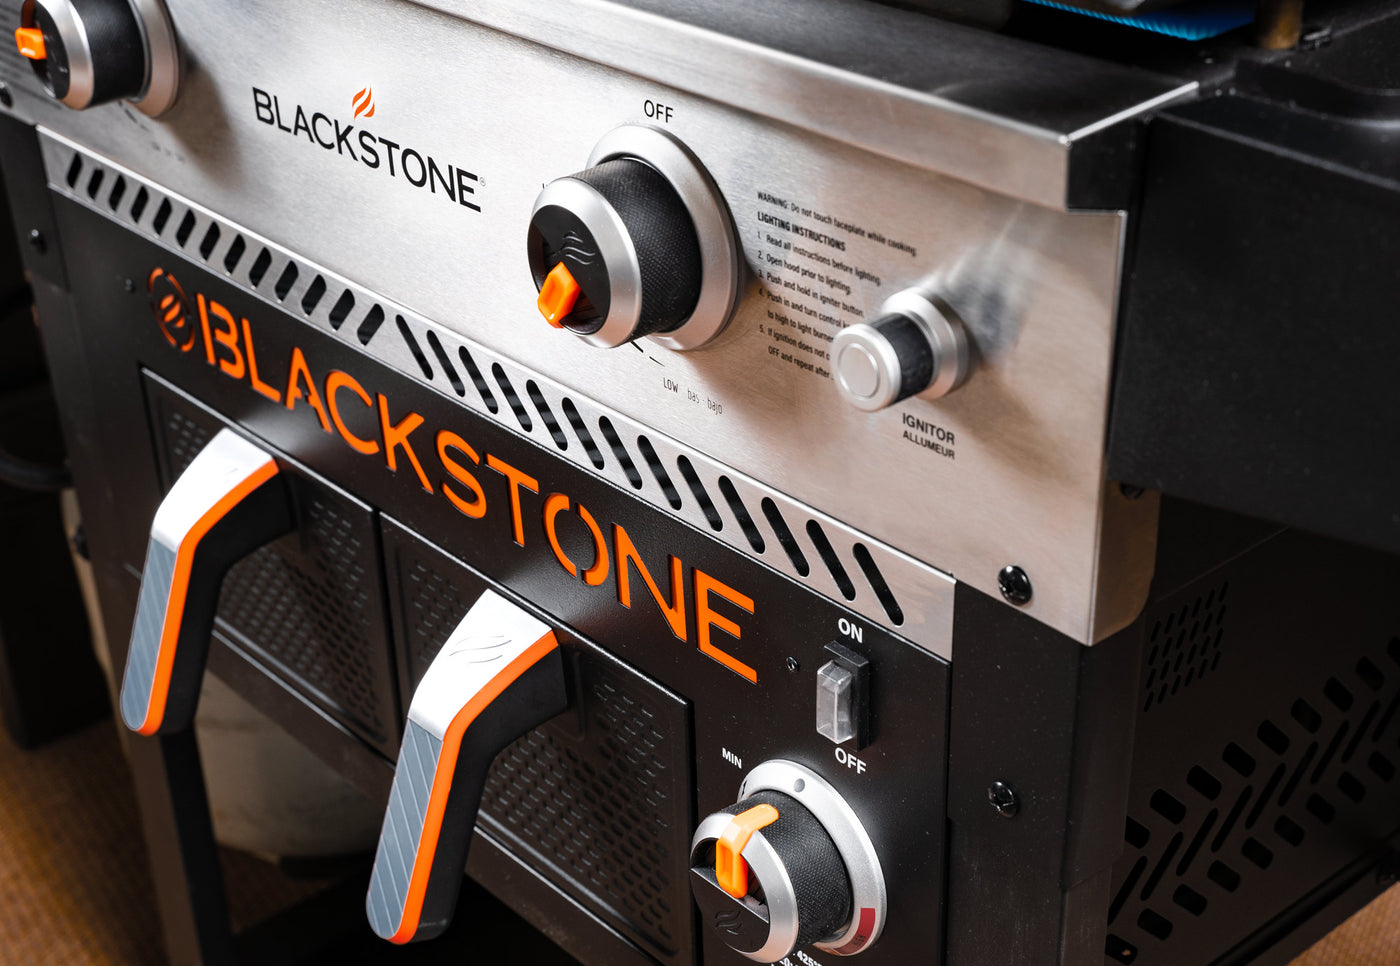 Blackstone 28" Griddle inkl. Heißluftfritteuse